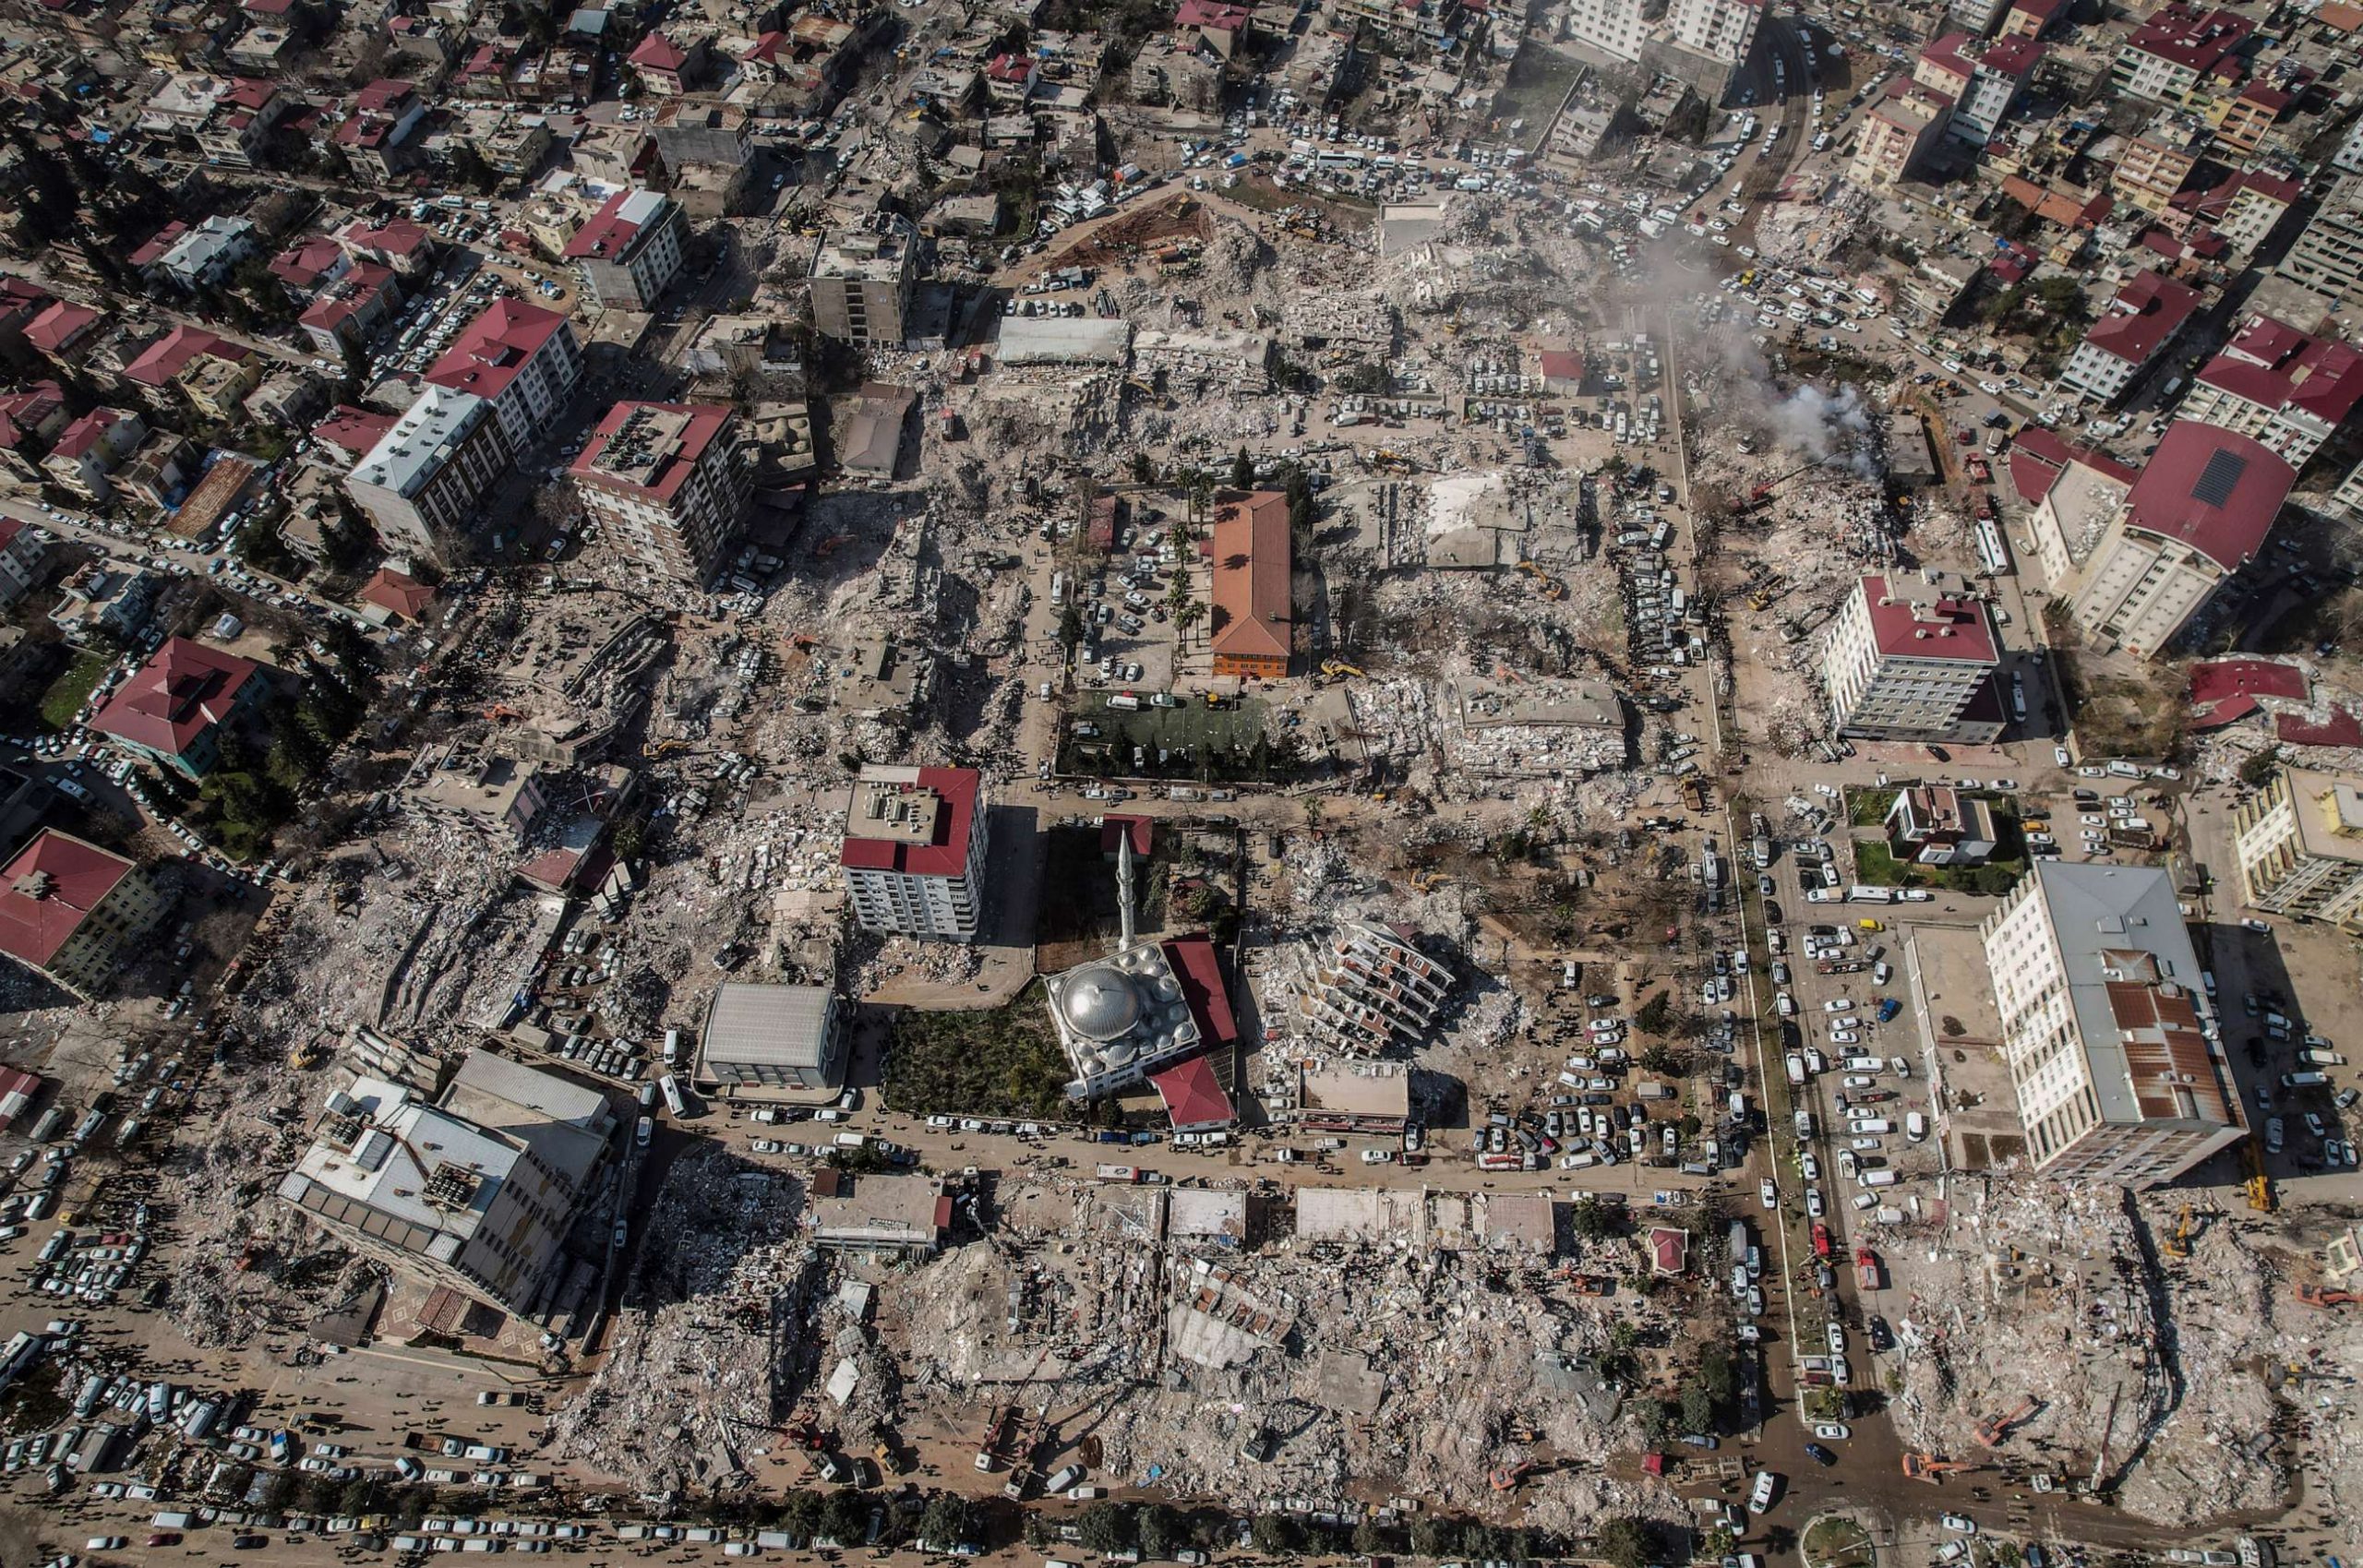 تركيا تعلن عن اعتقال 130 مقاول بناء بسبب غش مواد البناء مما تسبب في انهيار آلاف المنازل في الزلزال